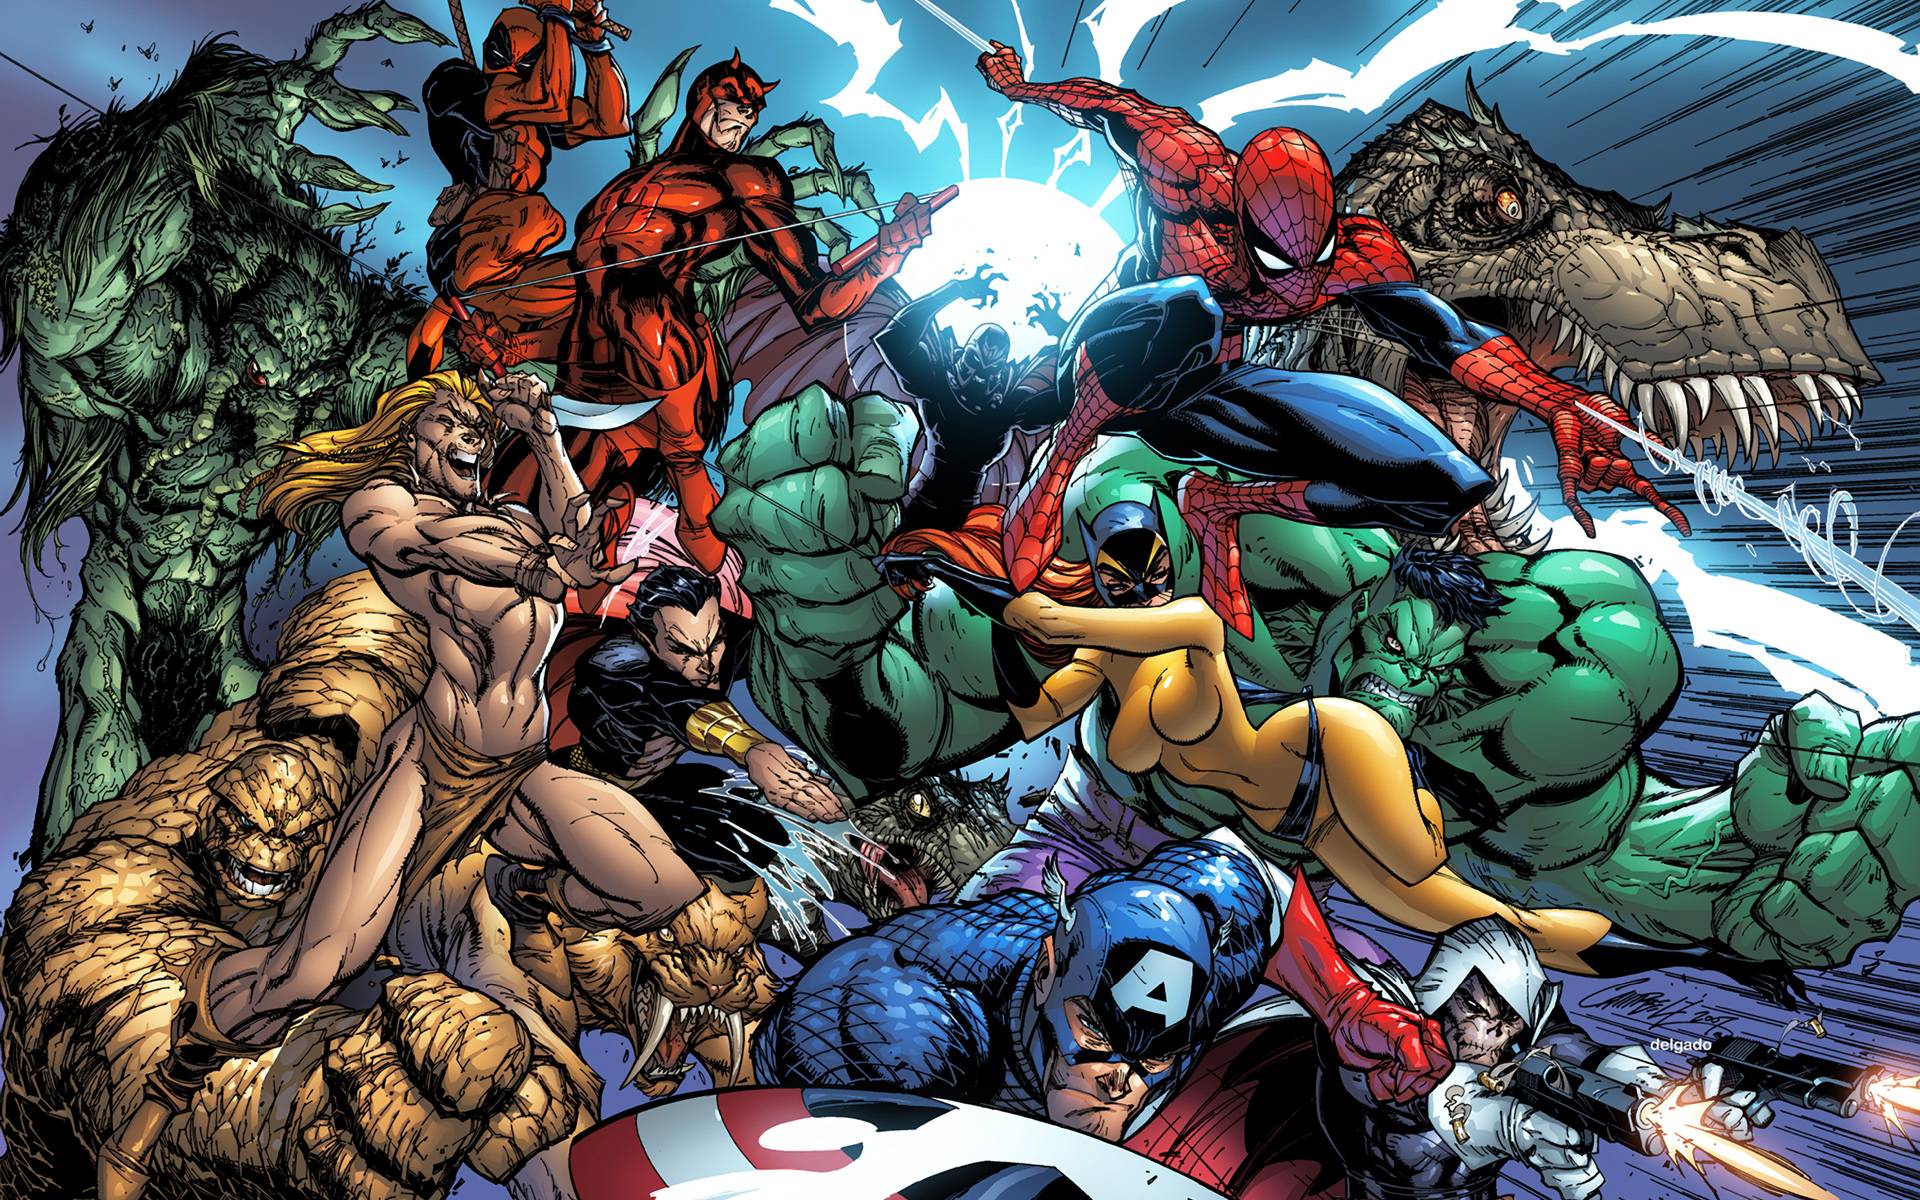 Marvel Heroes Wallpapers